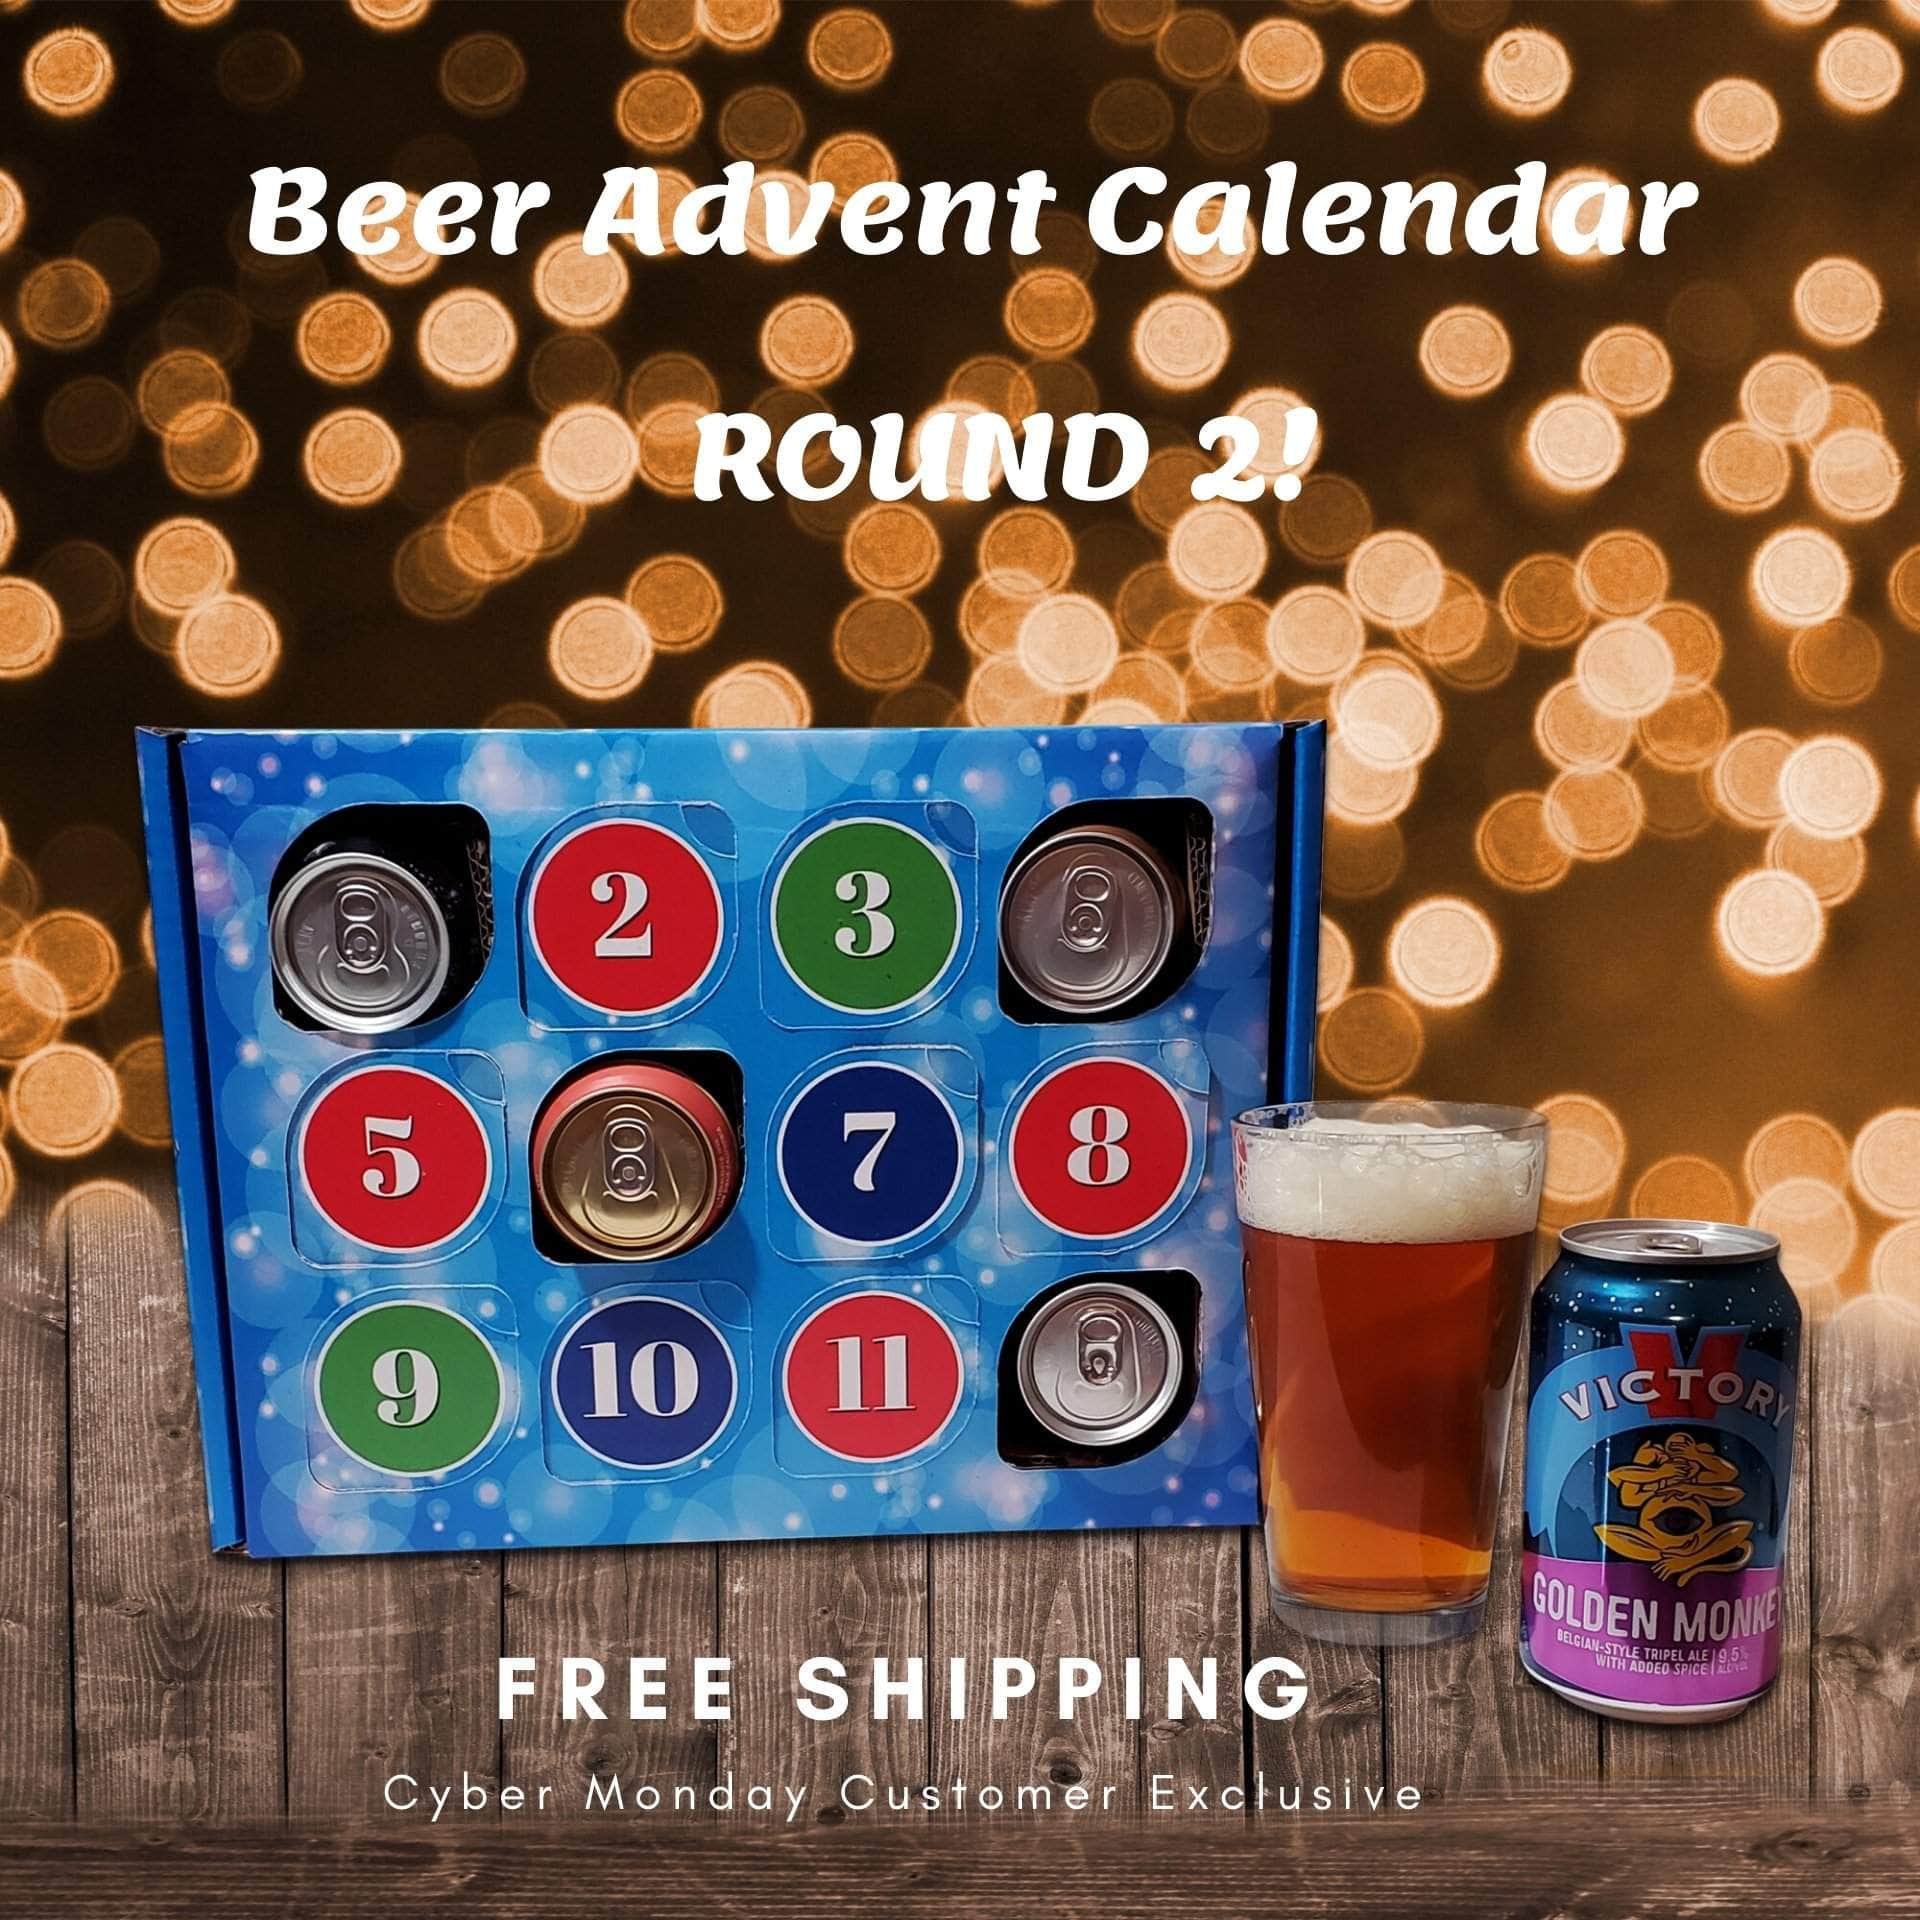 Holiday Beer Gift Baskets, Beer Gift Baskets, Beer Basket, Beer Baskets